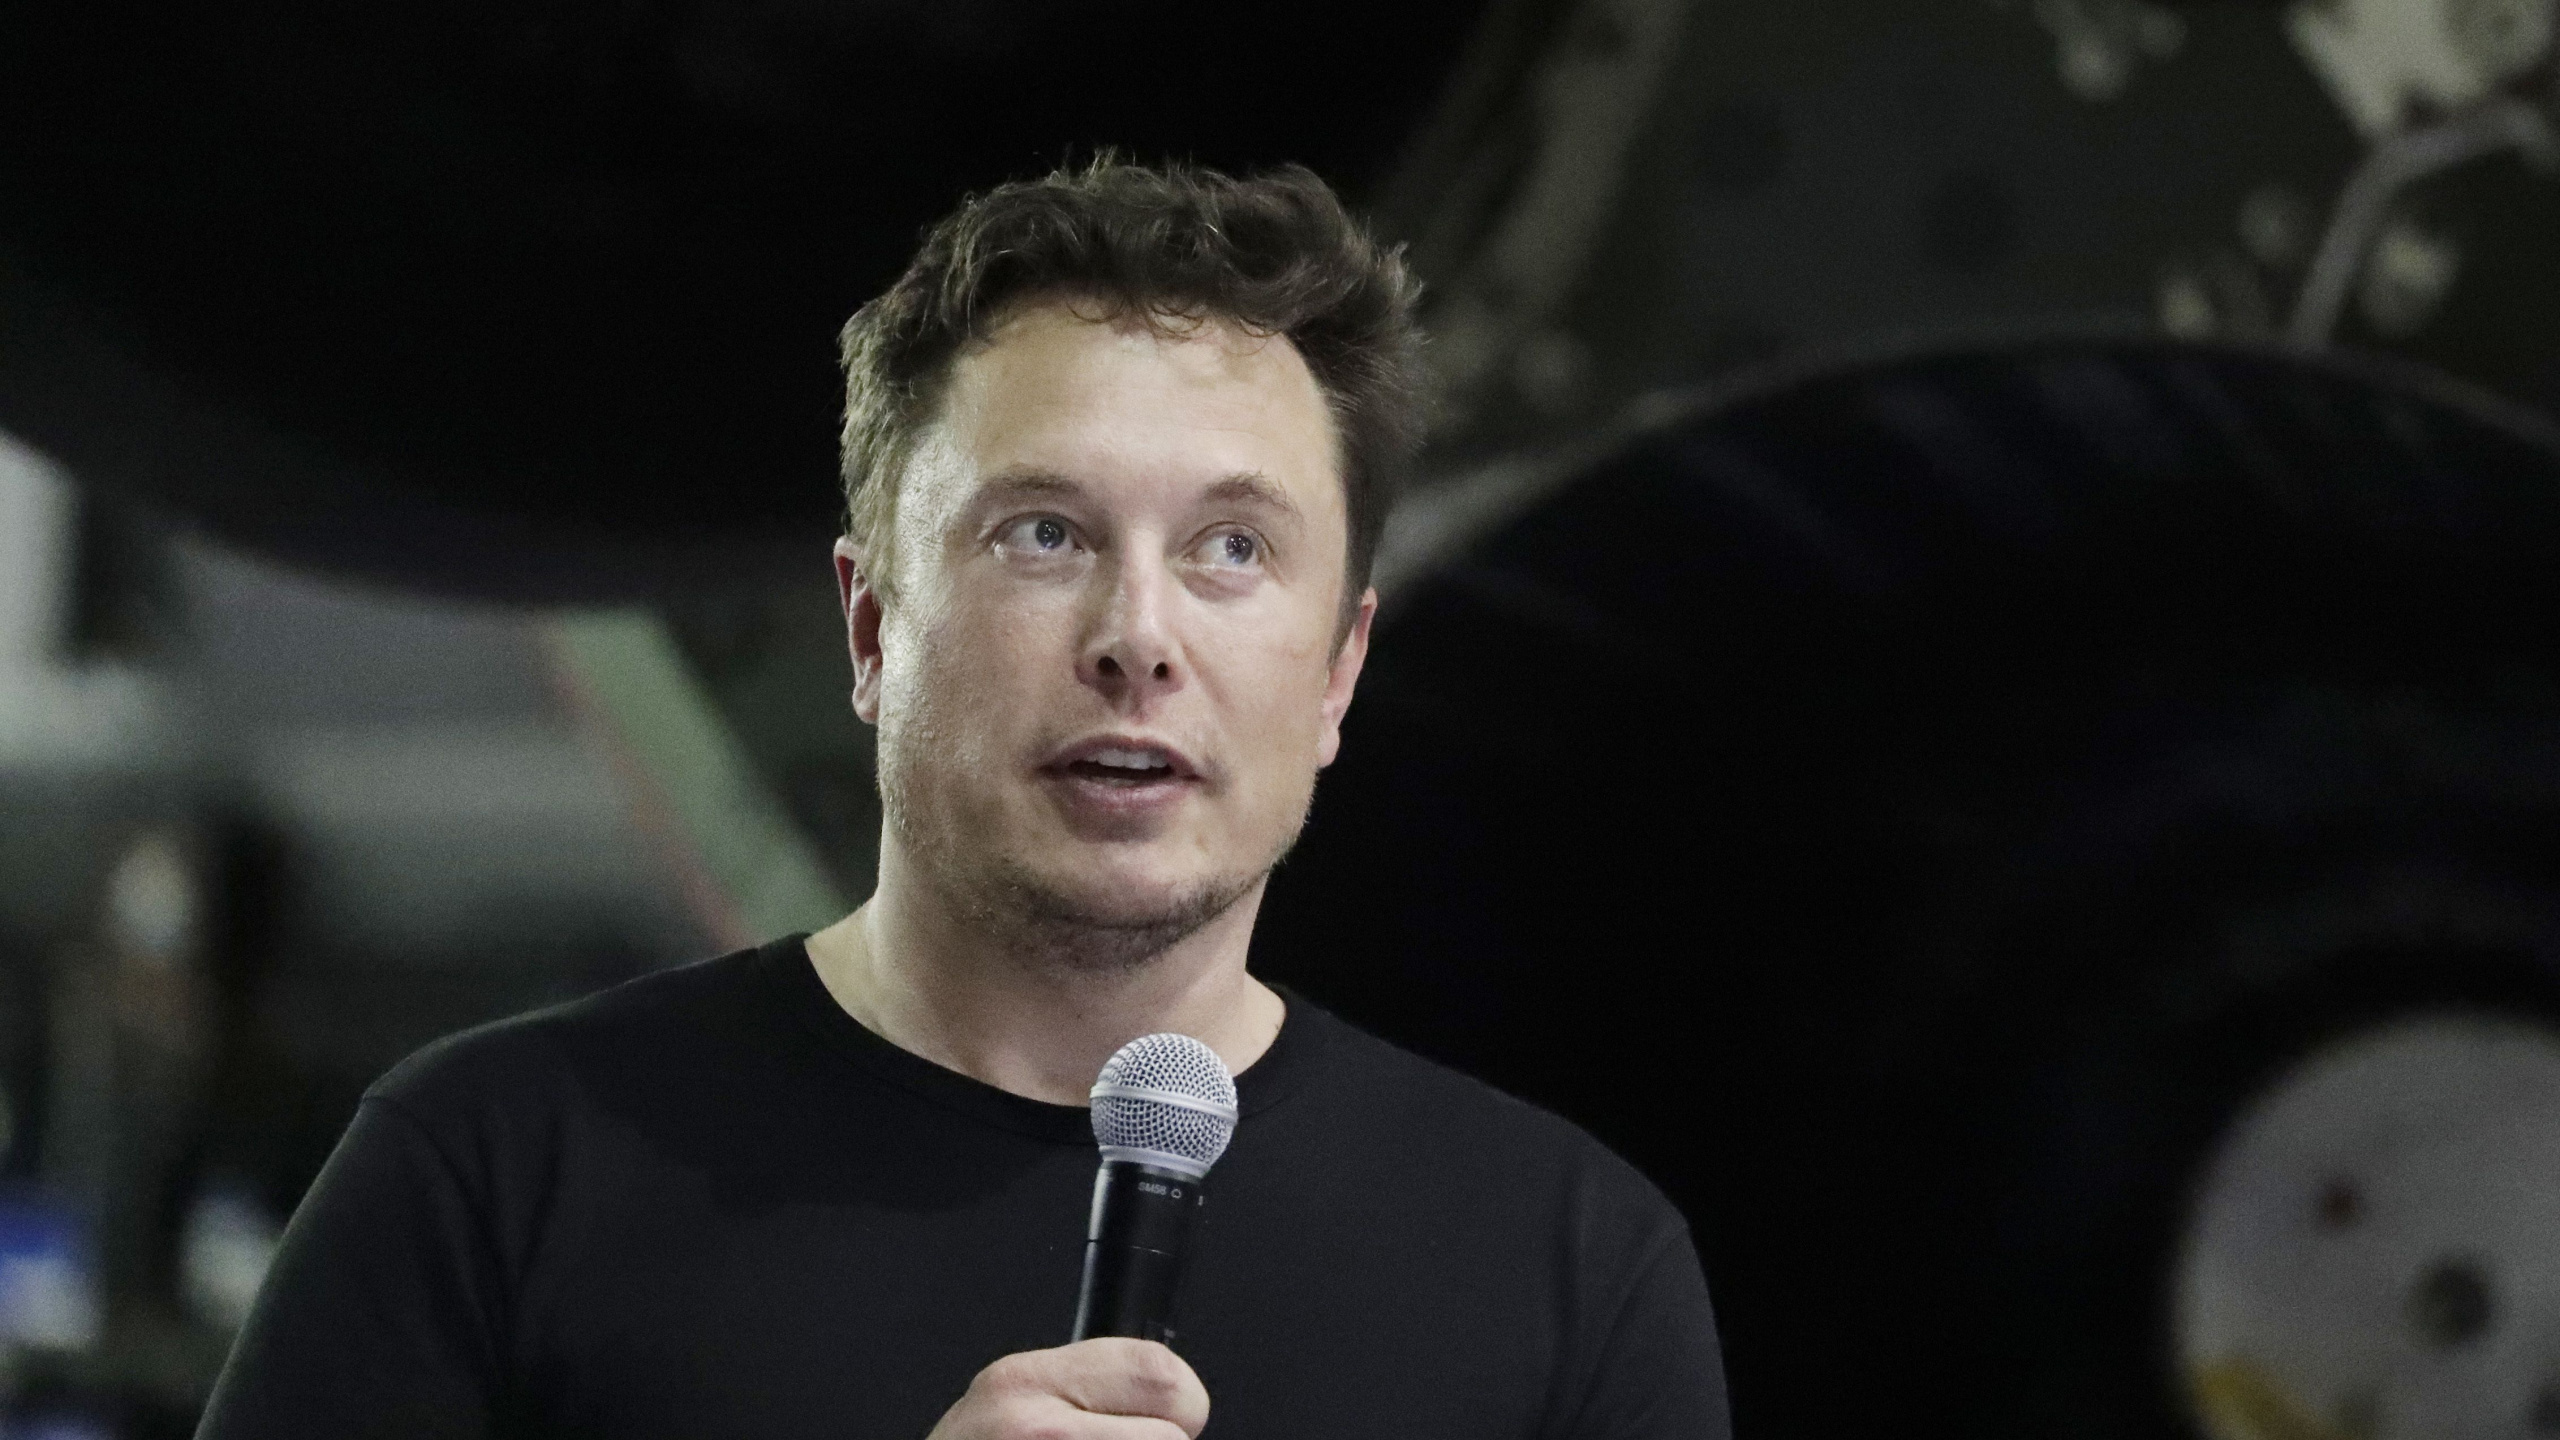 Elon Musk, Bohrtesttunnel, 60 Minuten, Vereinigte Staaten Von Amerika, Person. Wallpaper in 2560x1440 Resolution